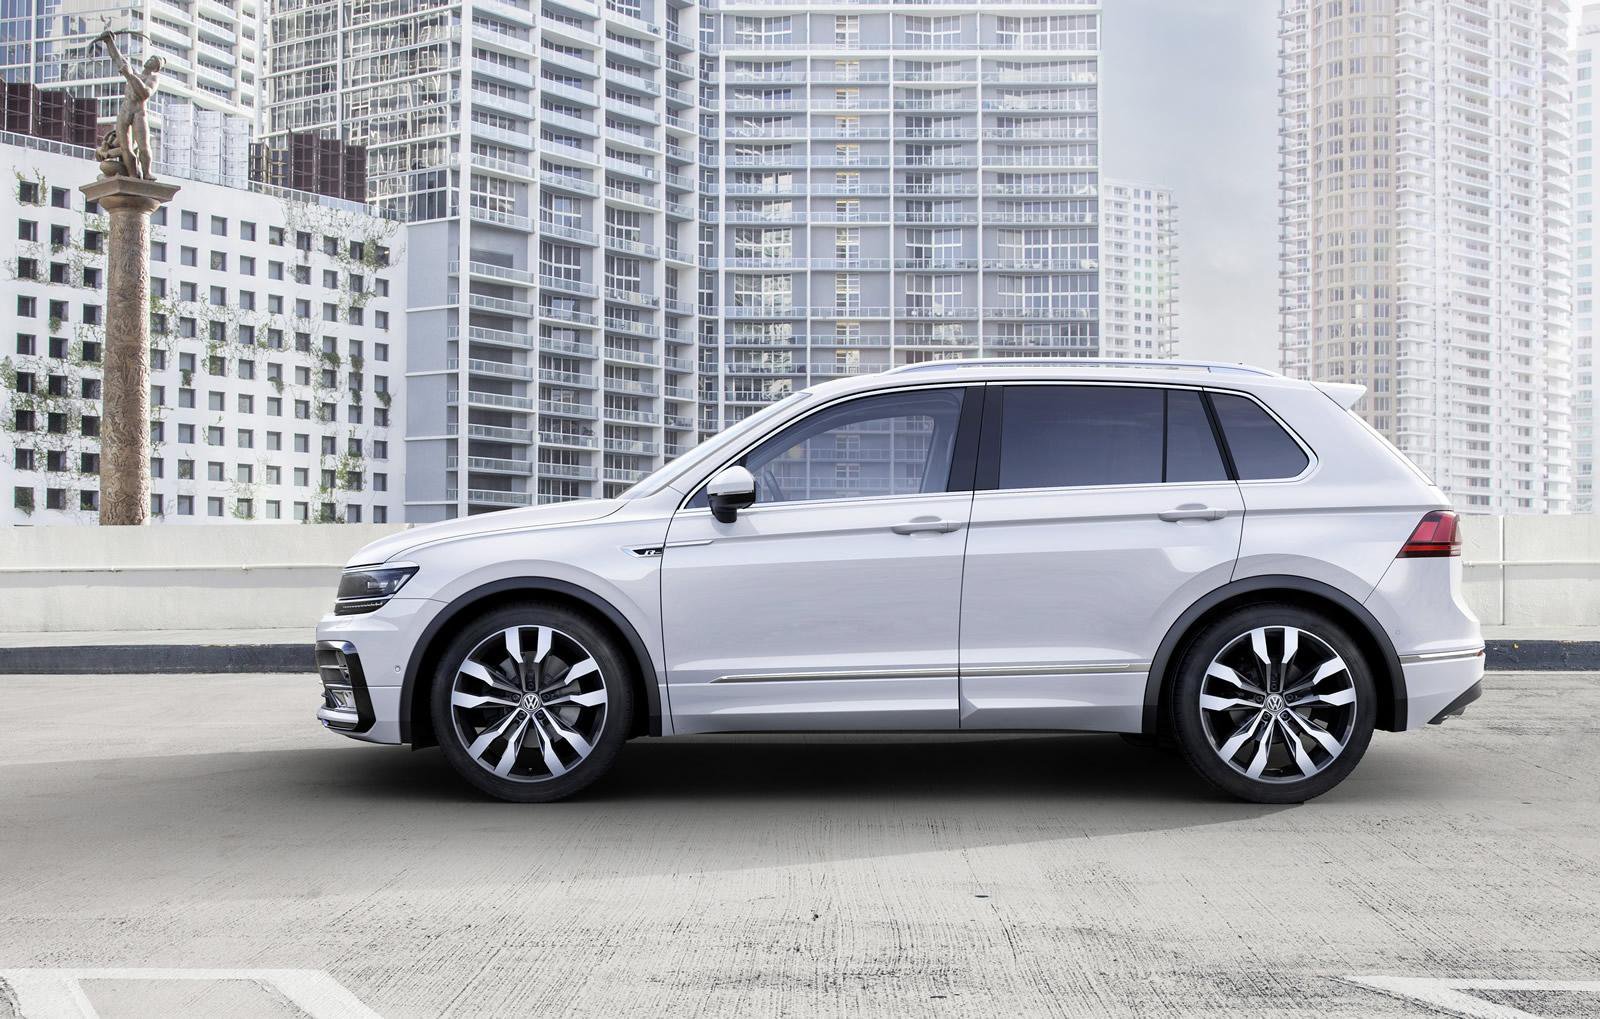 Nový Volkswagen Tiguan byl odhalen ještě před zahájením frankfurtského autosalonu